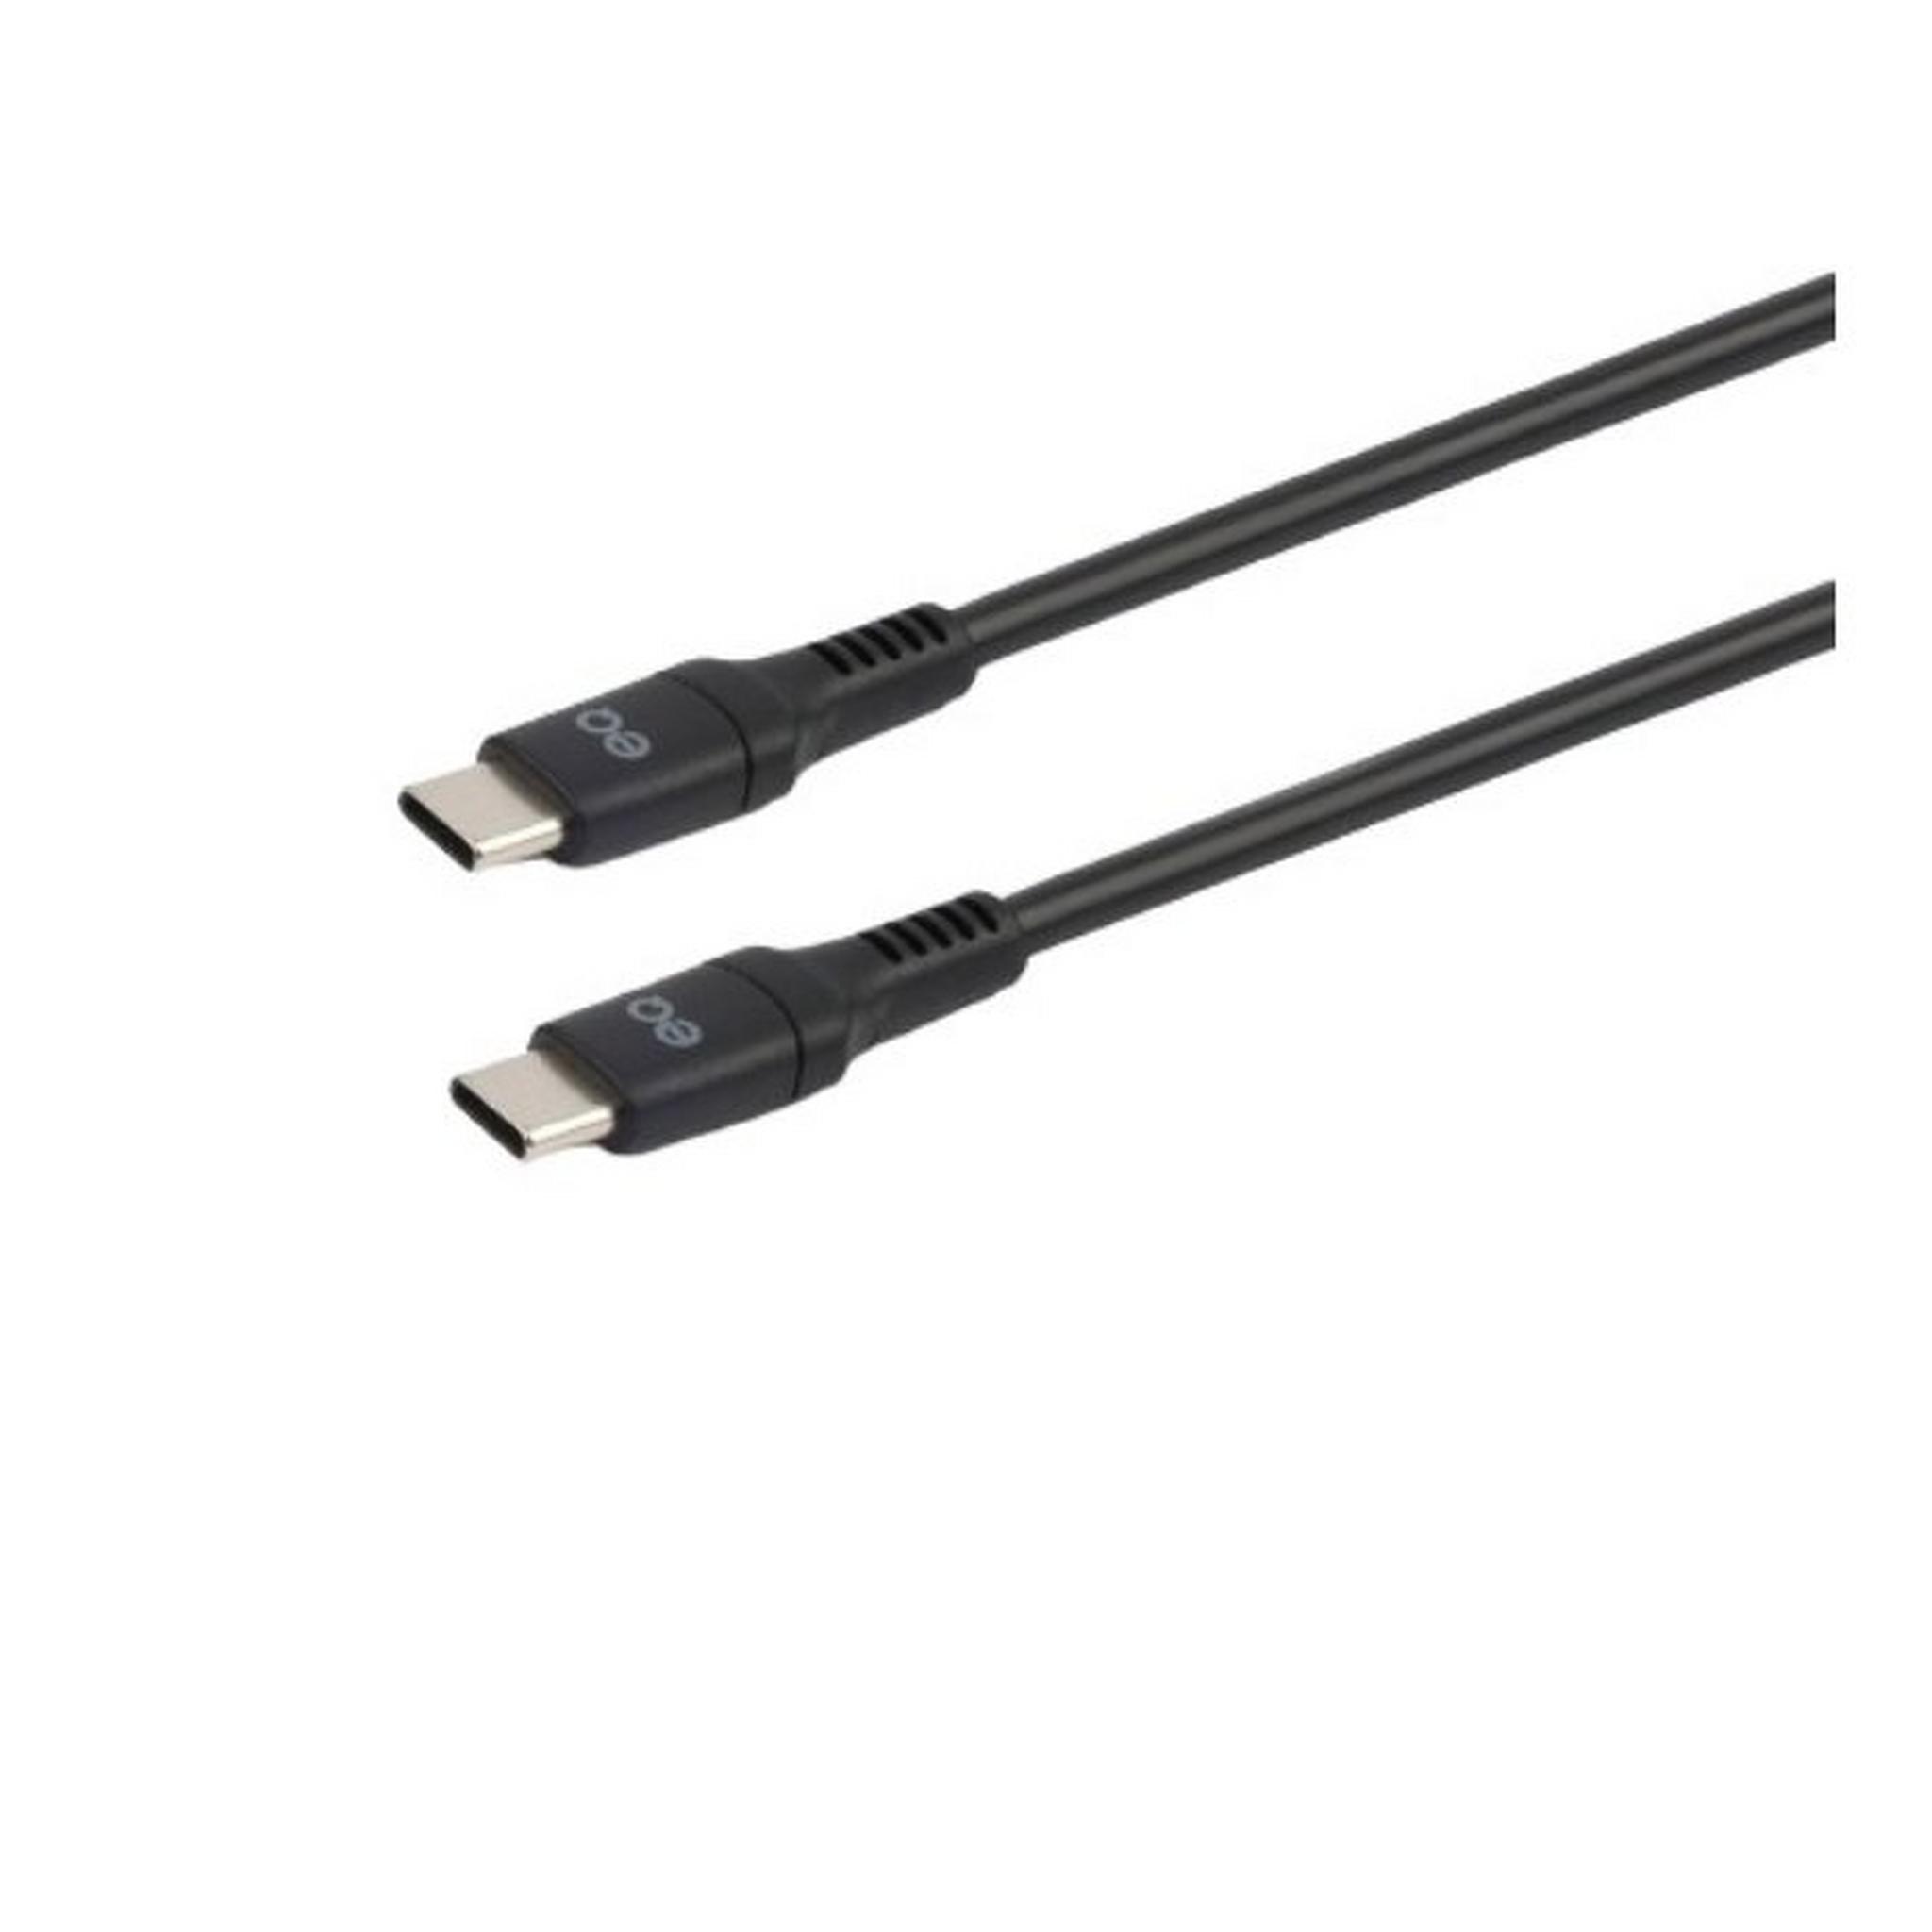 EQ USB-C To USB-C Charing Cable, 3m, CC-130D-3M-BLK – Black